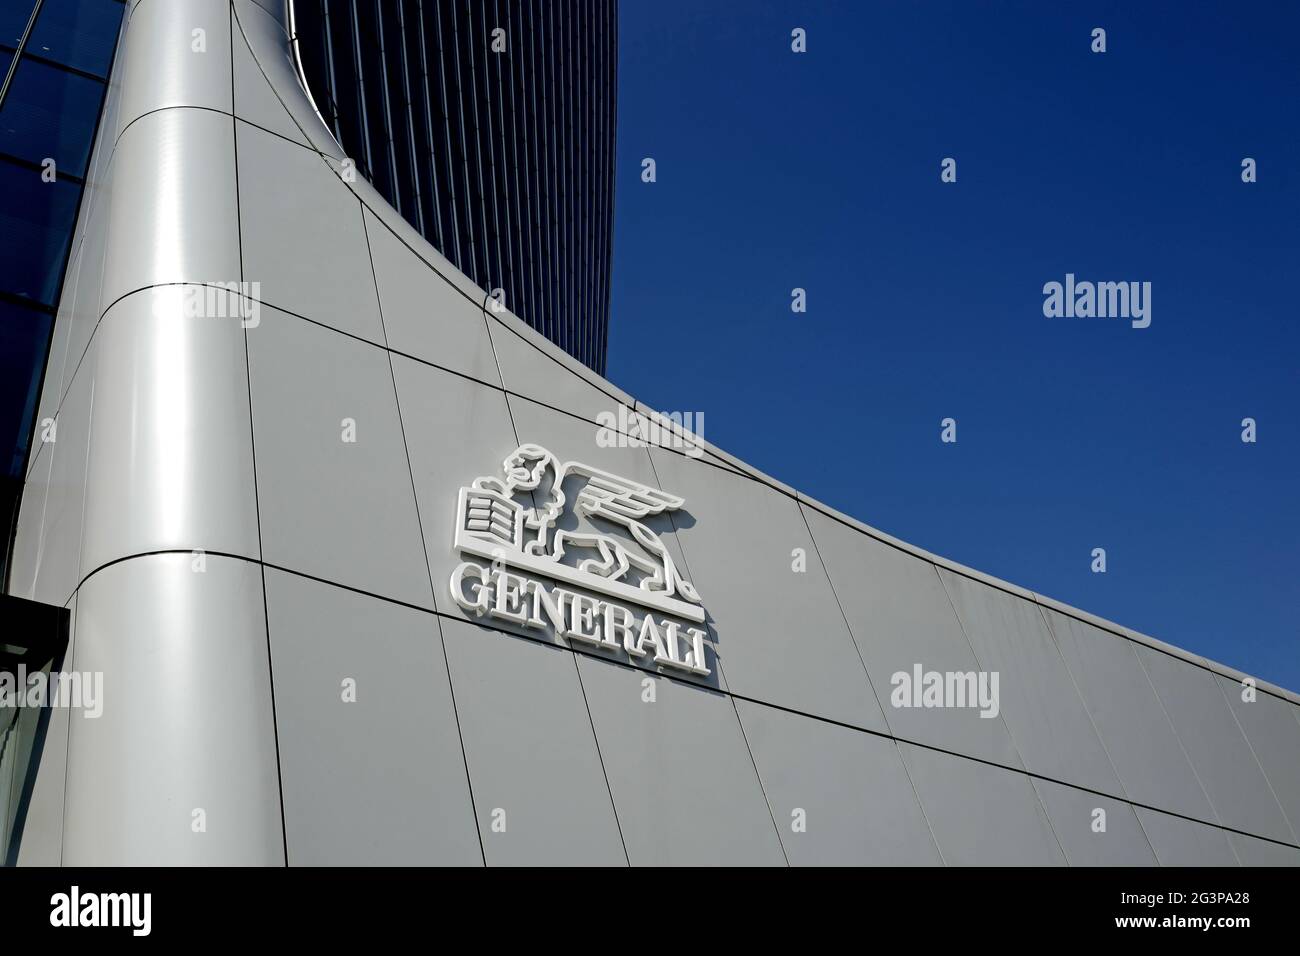 Entrée moderne en gratte-ciel avec logo de Generali Insurance Company, à Milan. Banque D'Images